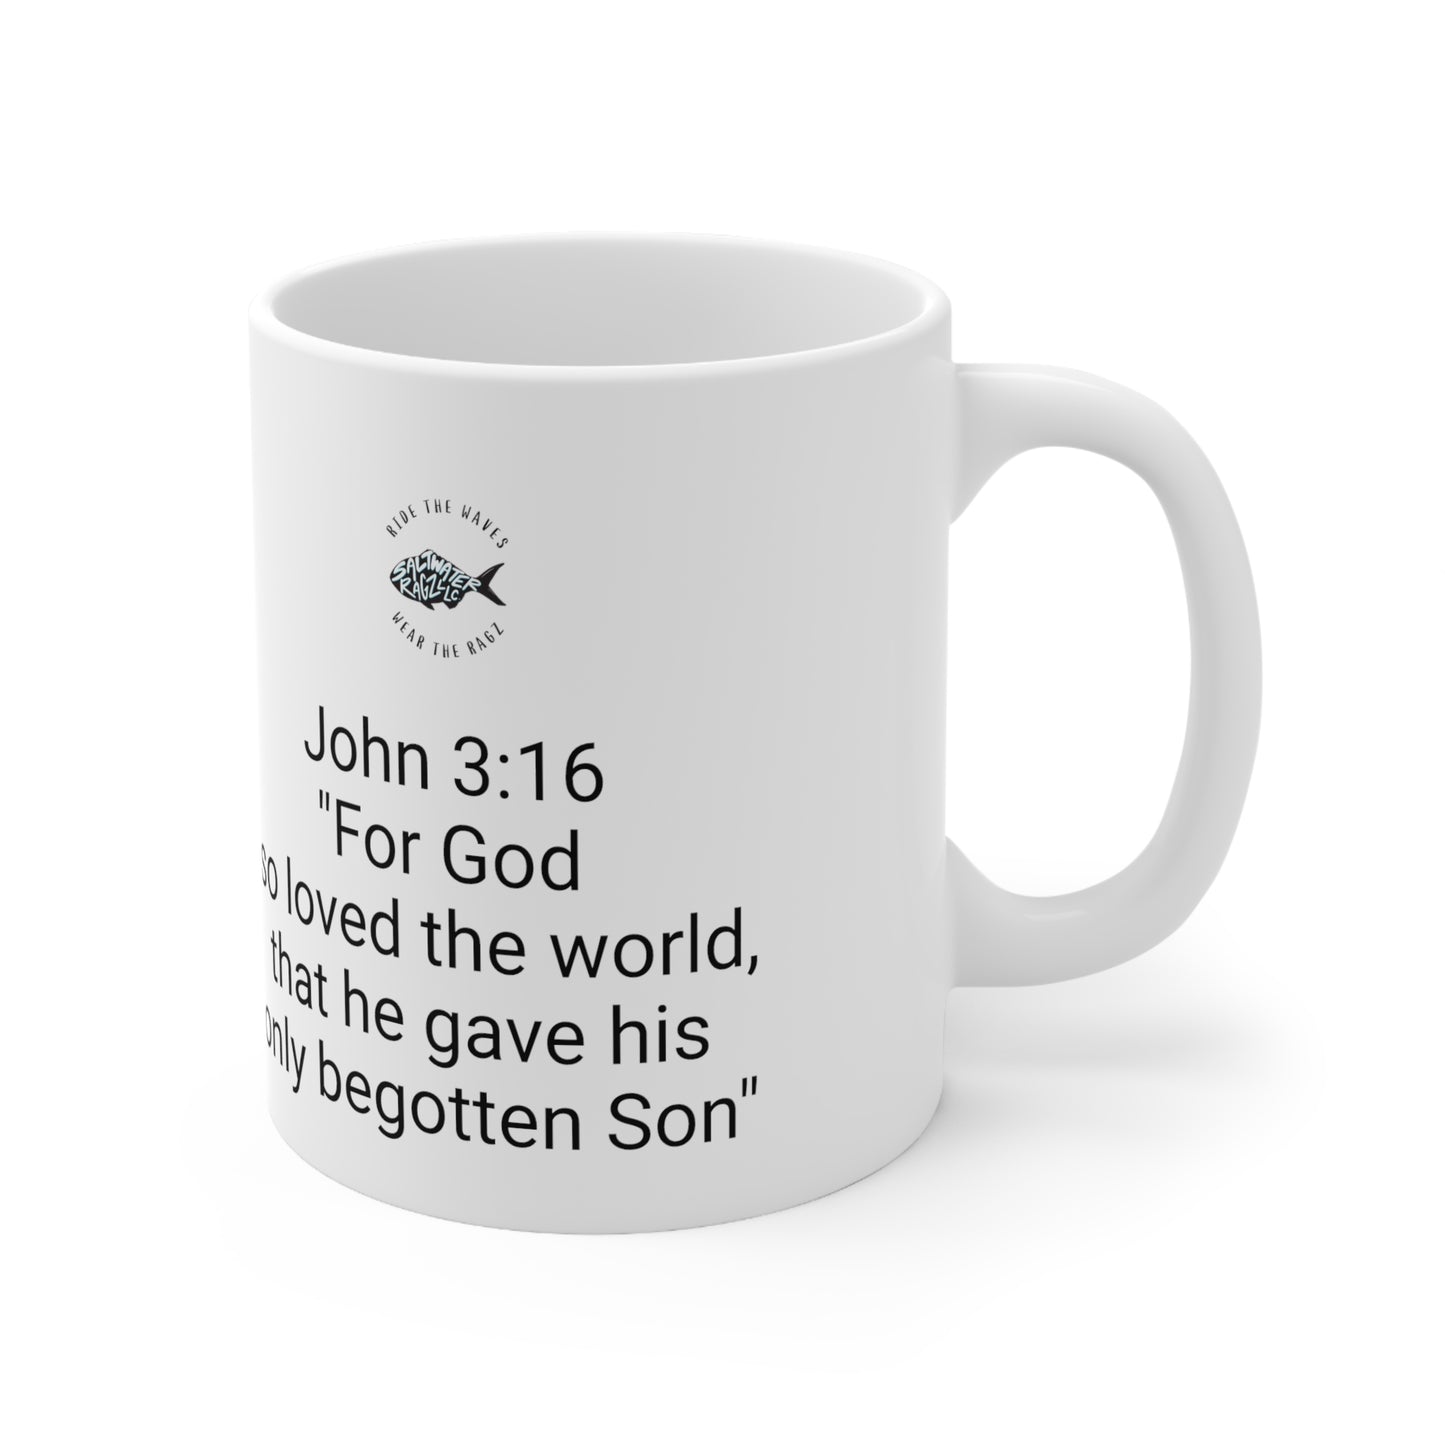 John 3:16 "For God So Loved The World" Ceramic Mug 11oz